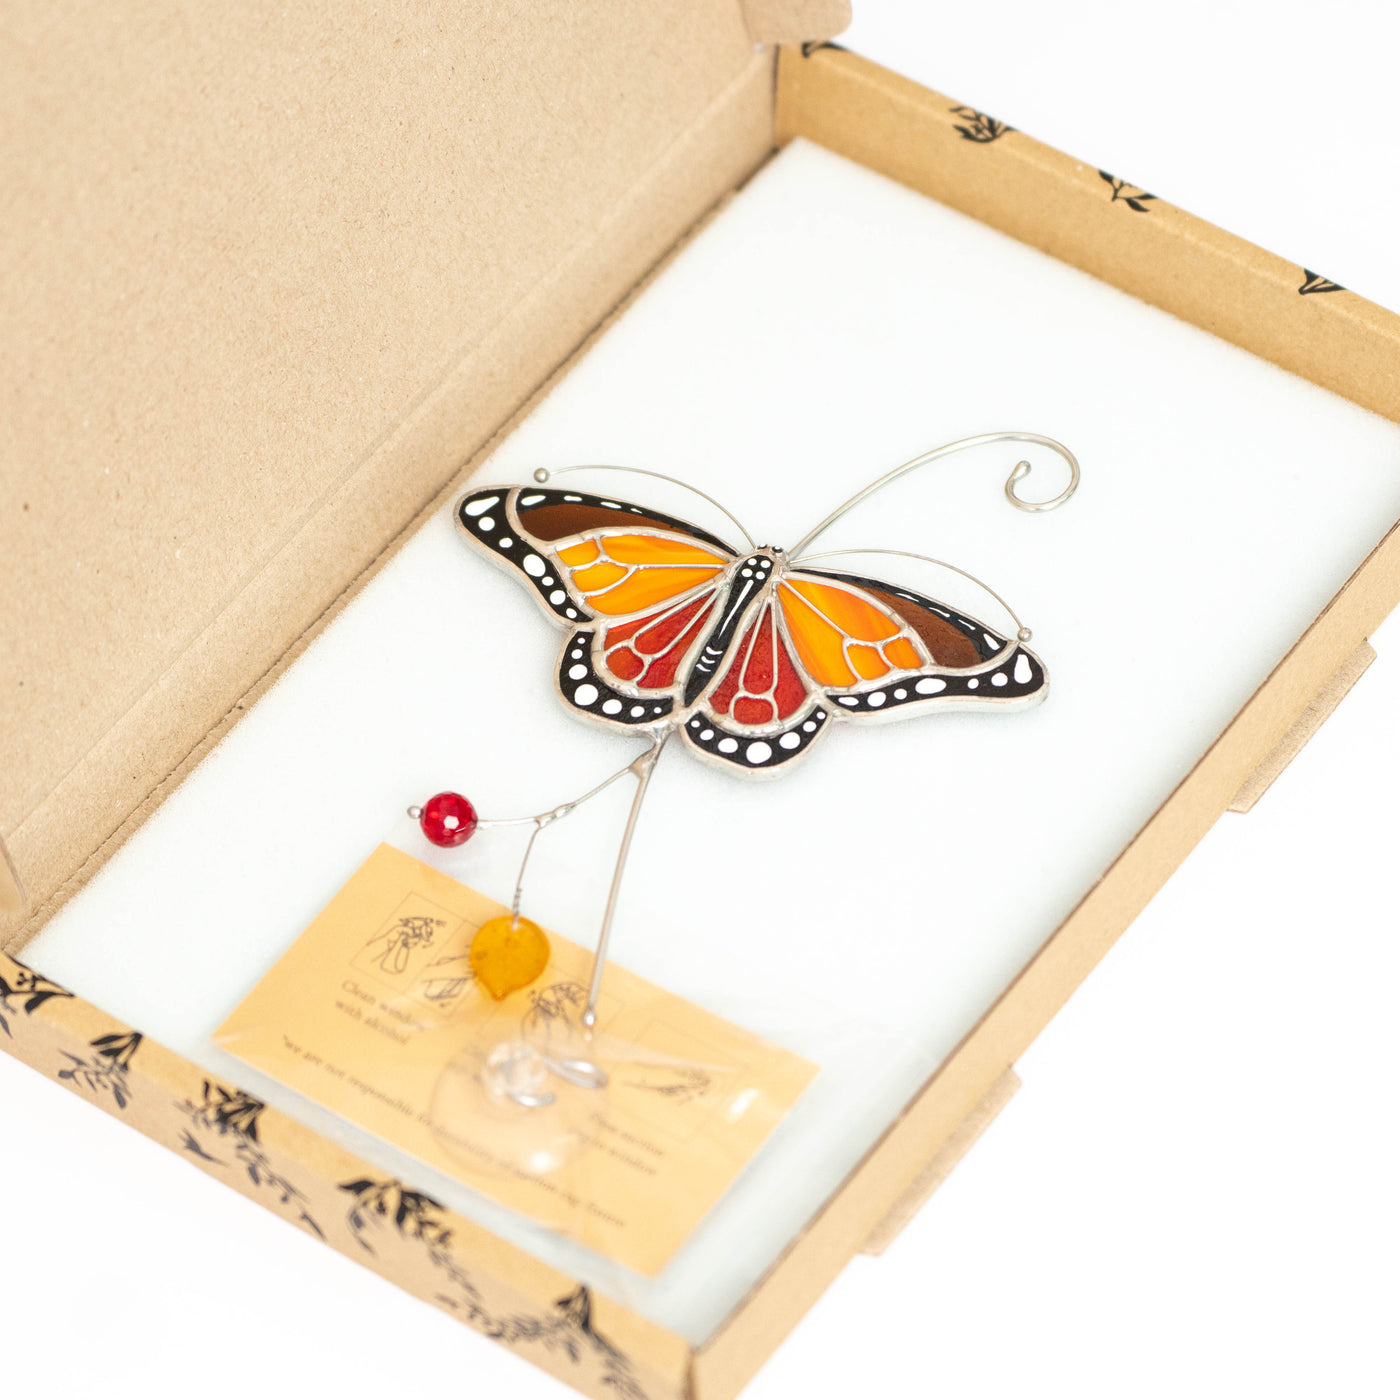 Monarch butterfly suncatcher in a brand box